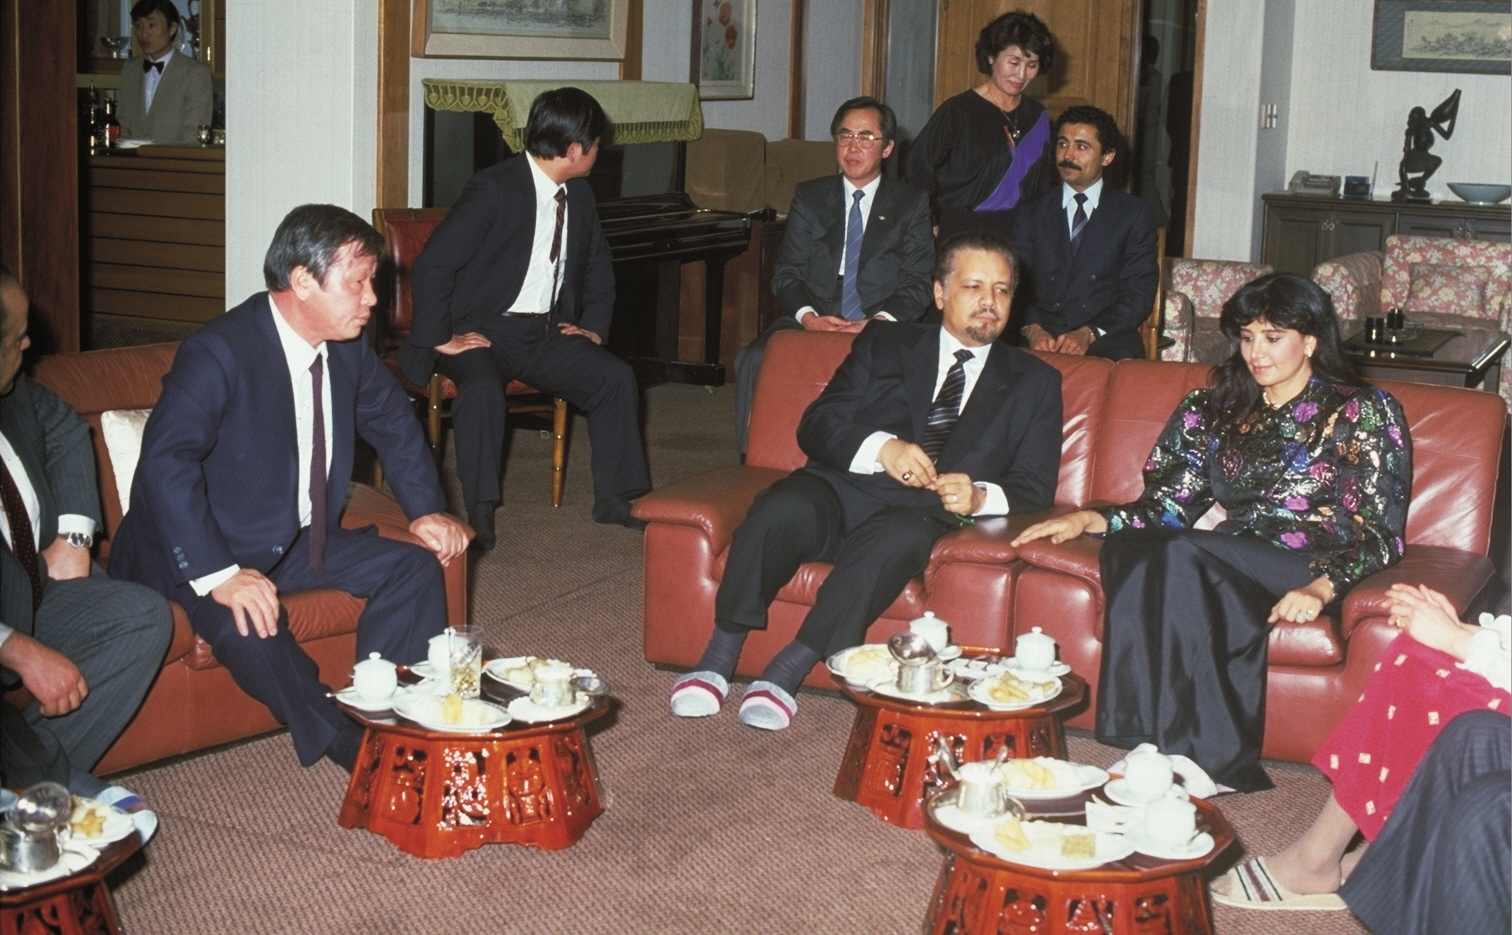 최종현(왼쪽) SK그룹 선대회장이 1981년 내한한 아흐마드 자키 야마니(가운데) 전 사우디아라비아 석유장관과 이야기를 나누고 있다. 2차 석유 파동 당시 최 선대회장은 사우디아라비아와 돈독한 관계를 바탕으로 장기 원유공급 계약을 체결하며 위기를 돌파했다. SK 제공